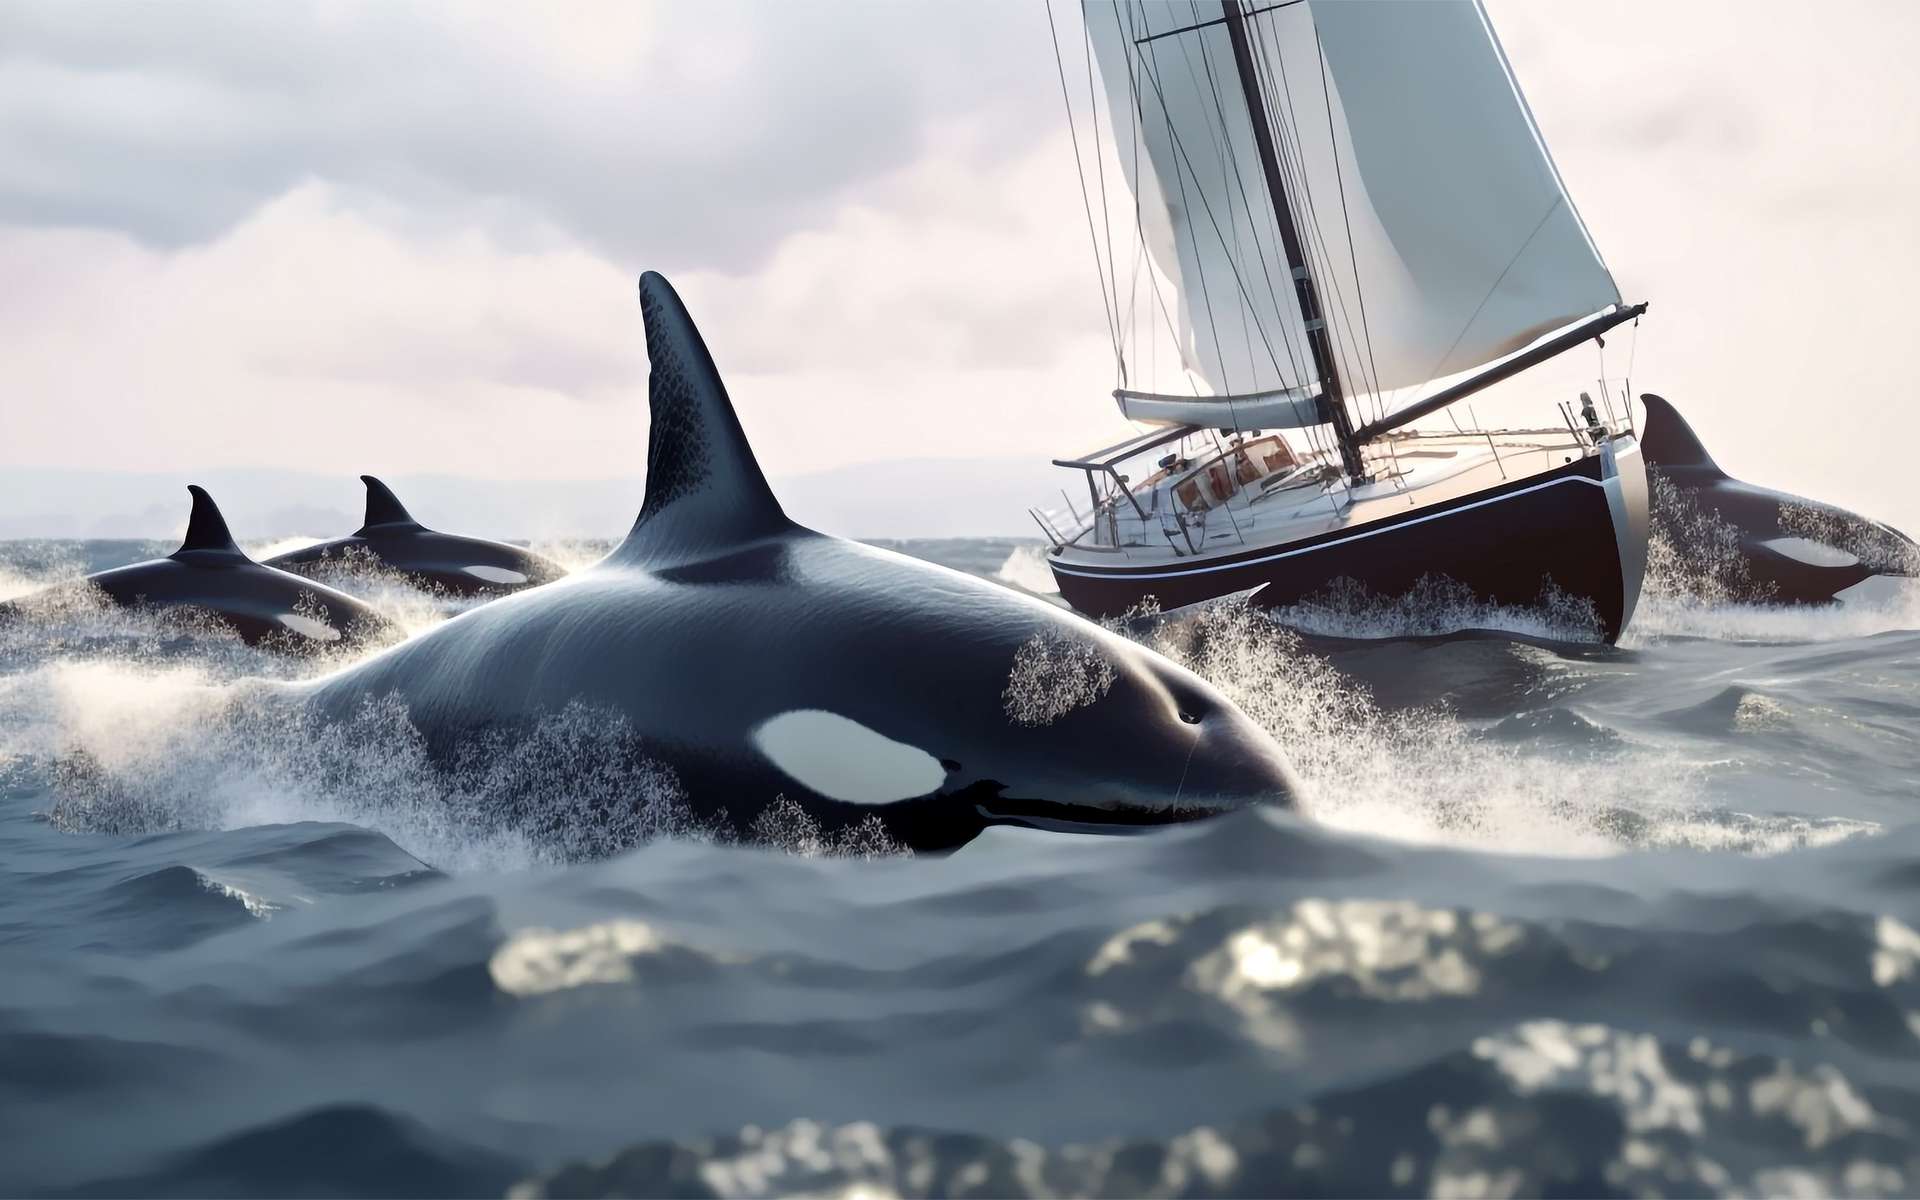 Attaques d'orques contre des bateaux : est-ce un jeu ou une vengeance calculée ?